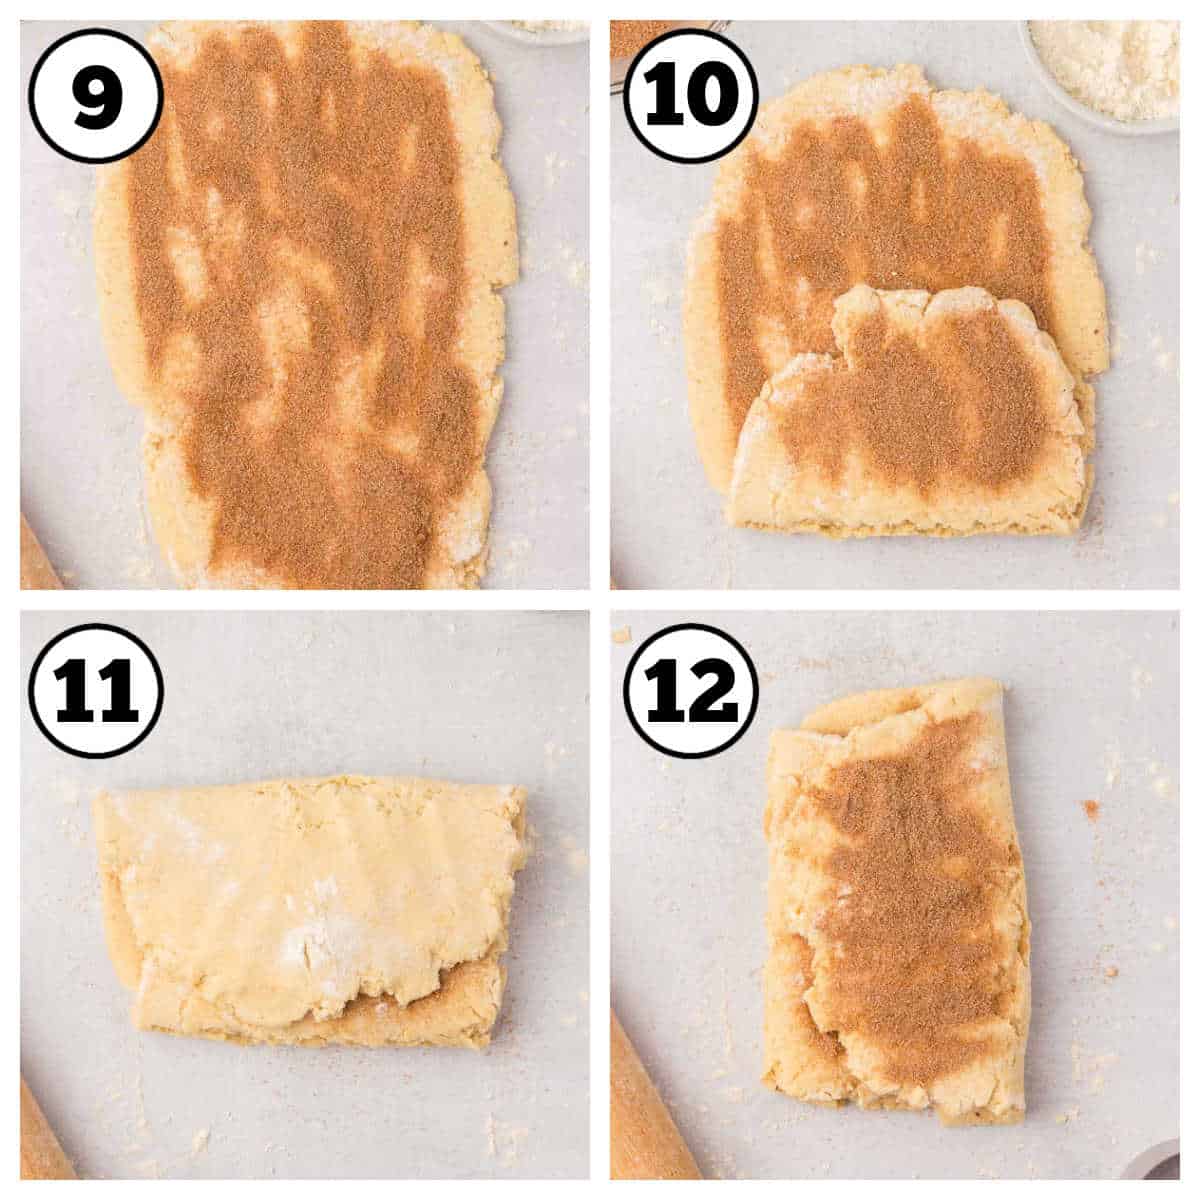 Cinnamon biscuit tutorial in steps.